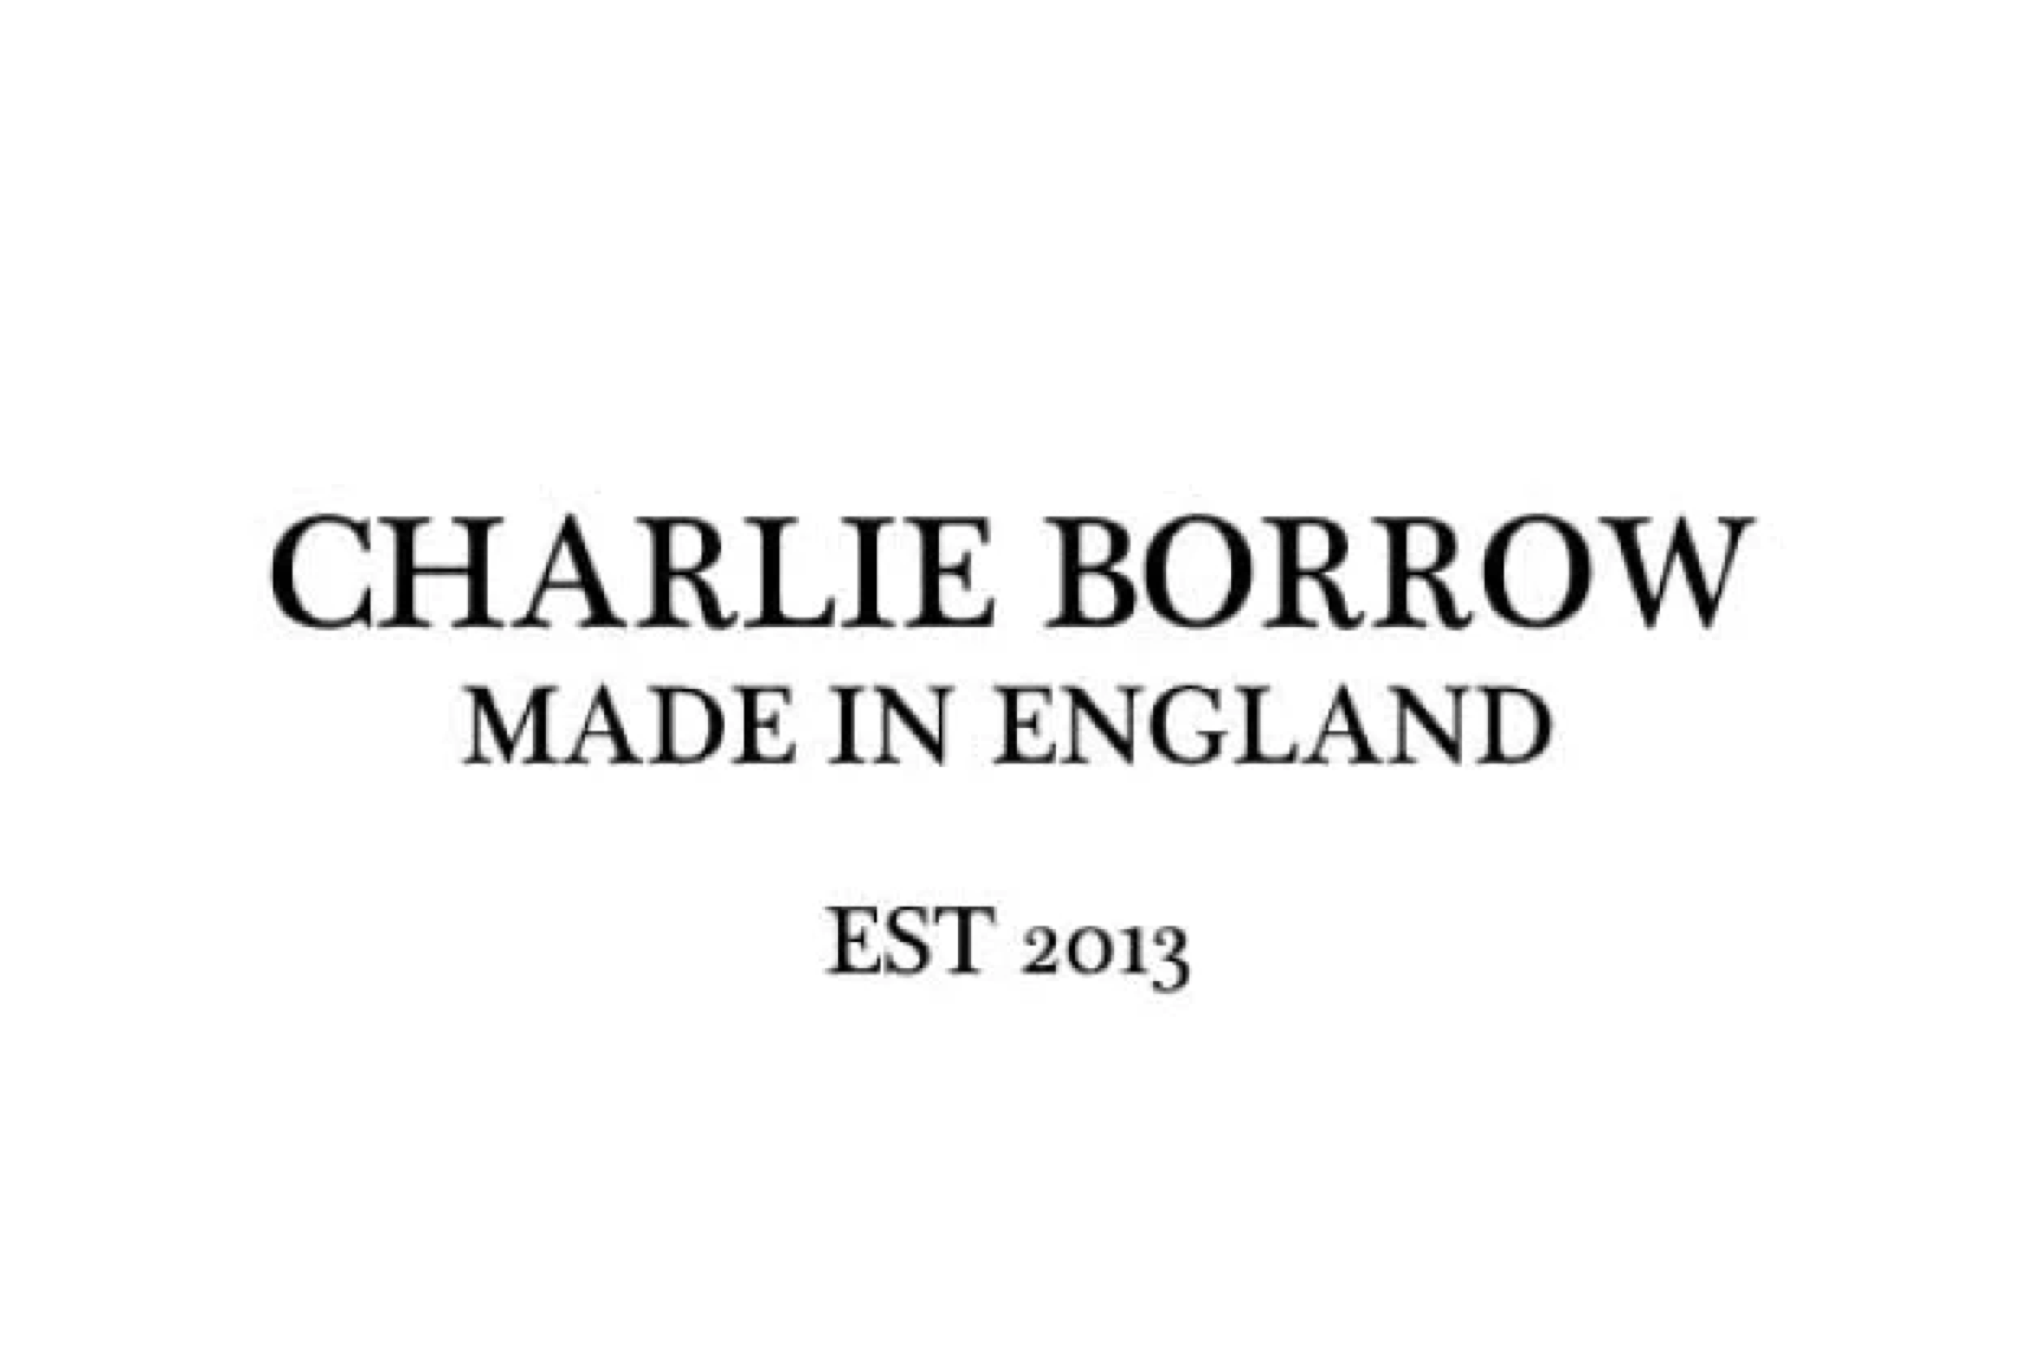 CHARLIE BORROW